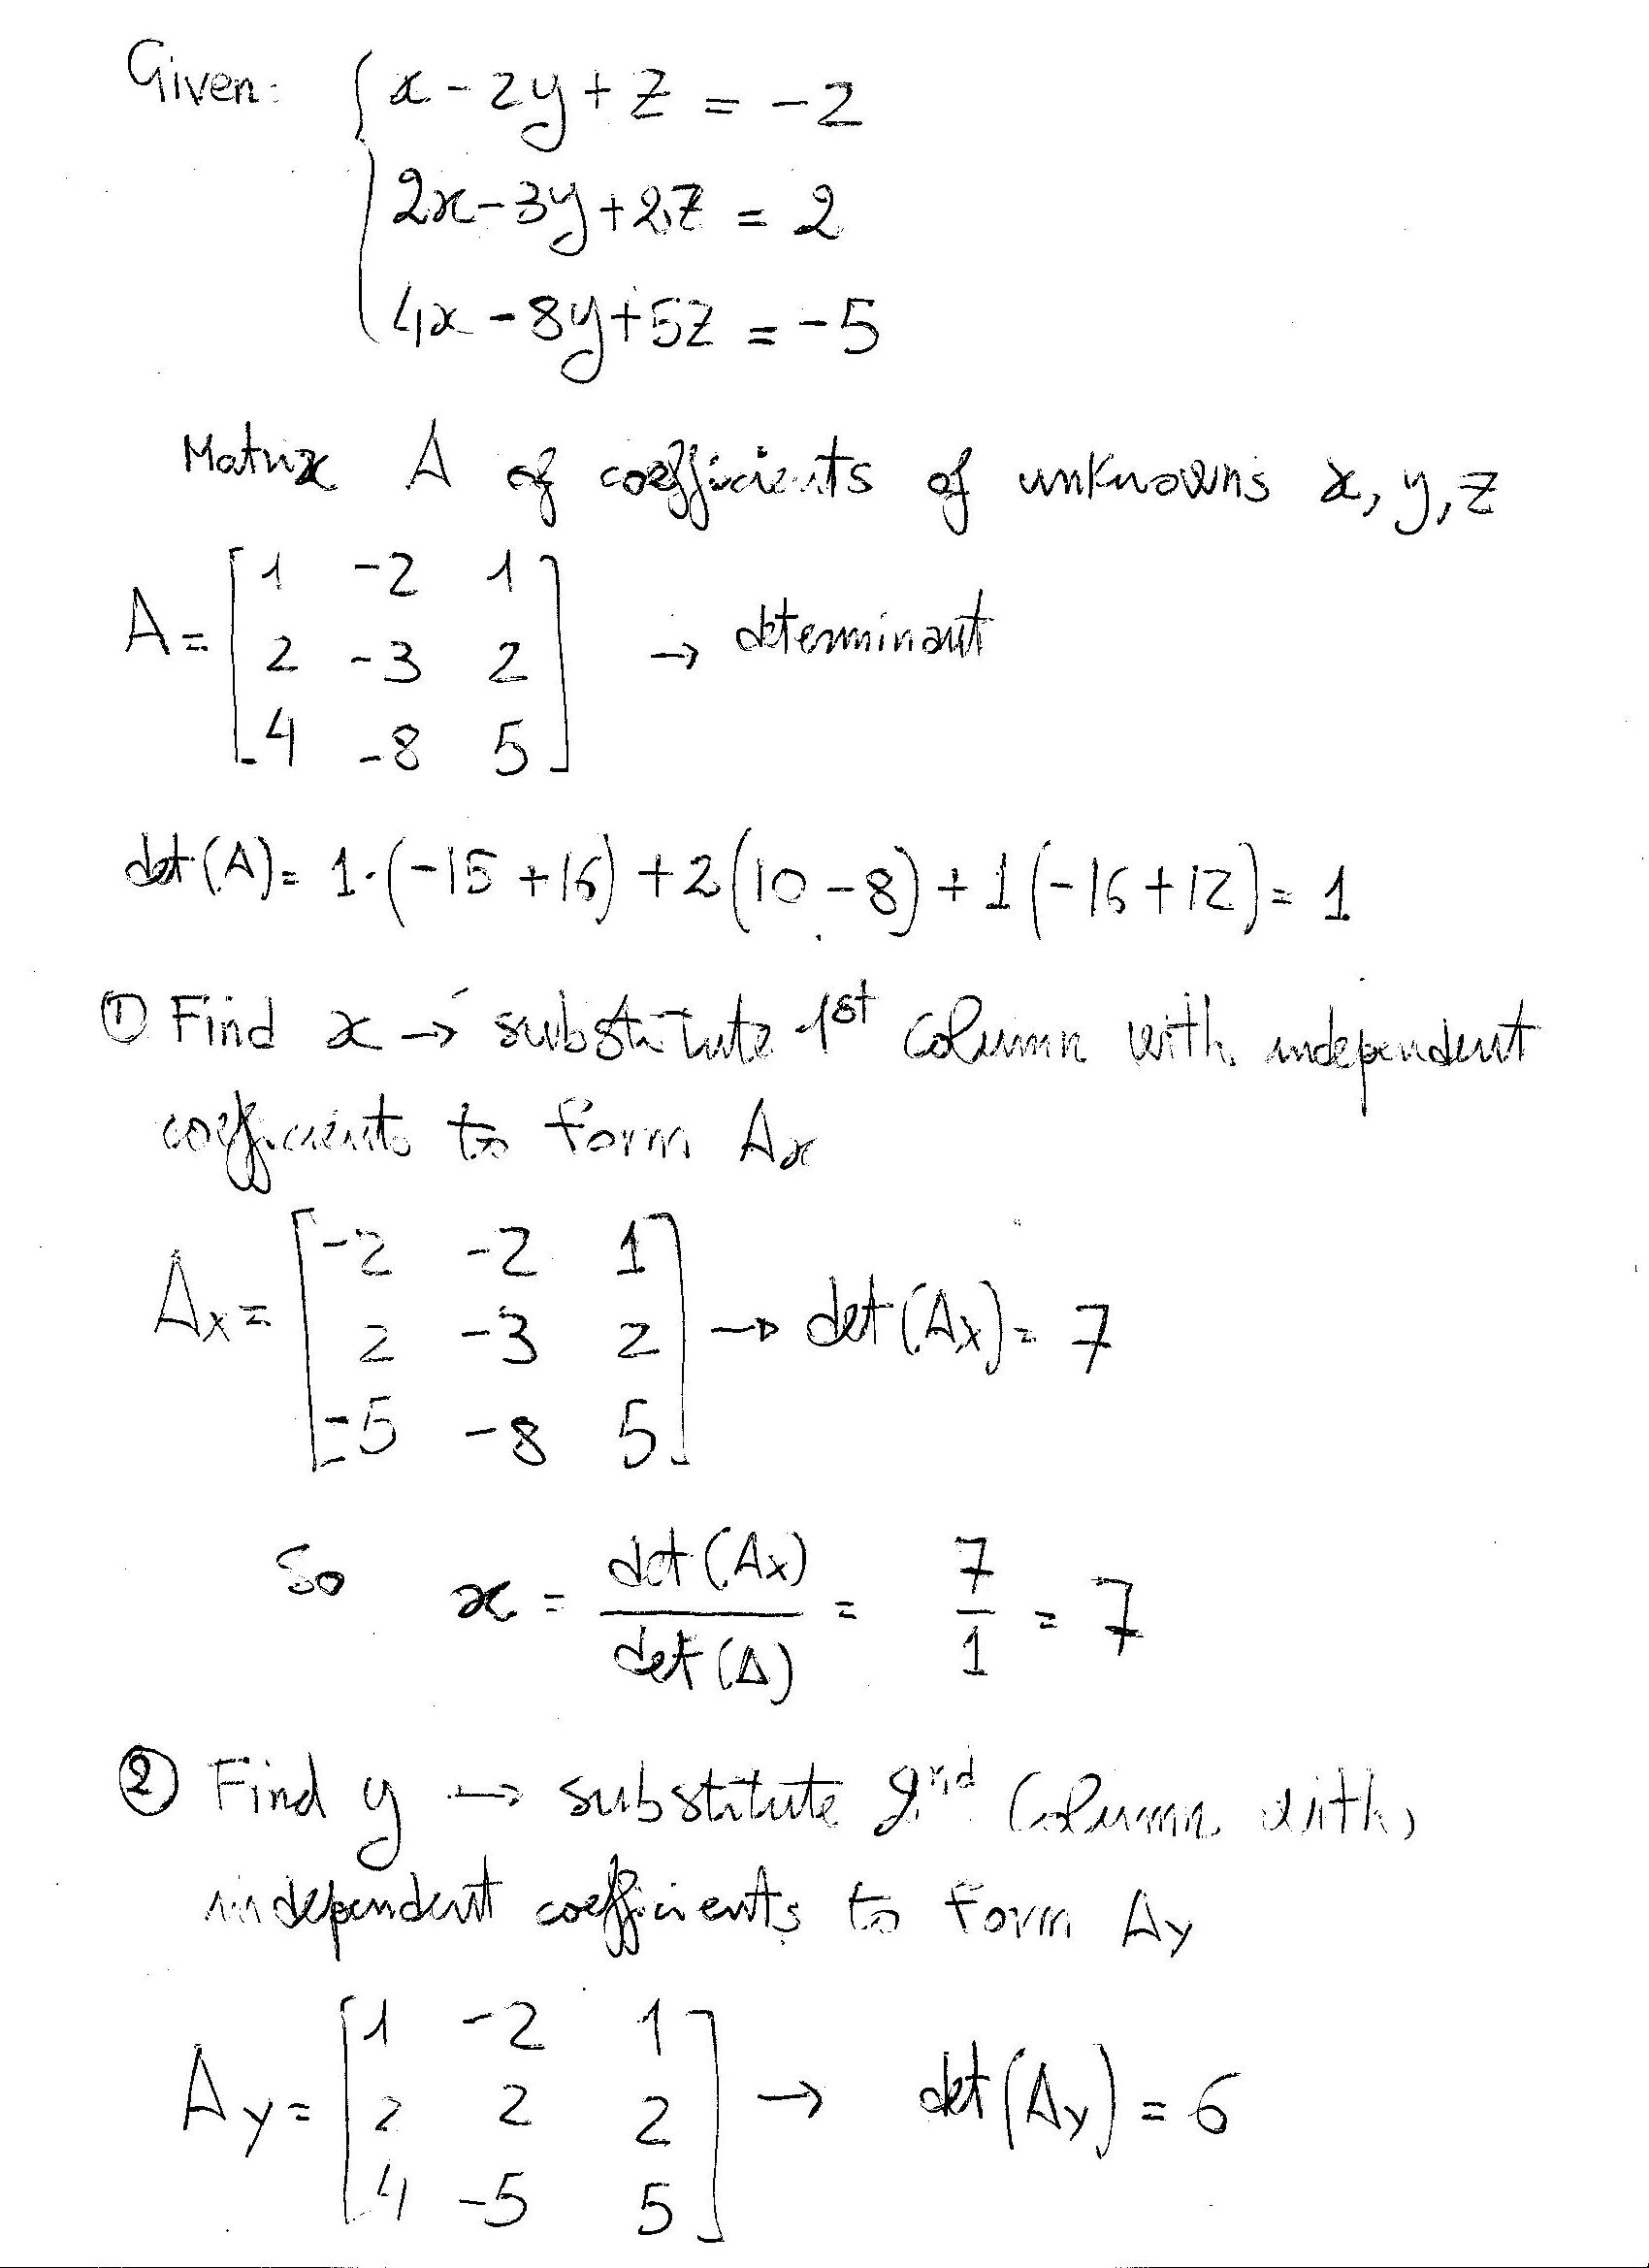 How do you solve x - 2y + z = - 2, 2x - 3y + 2z = 2, and 4x - 8y + 5z